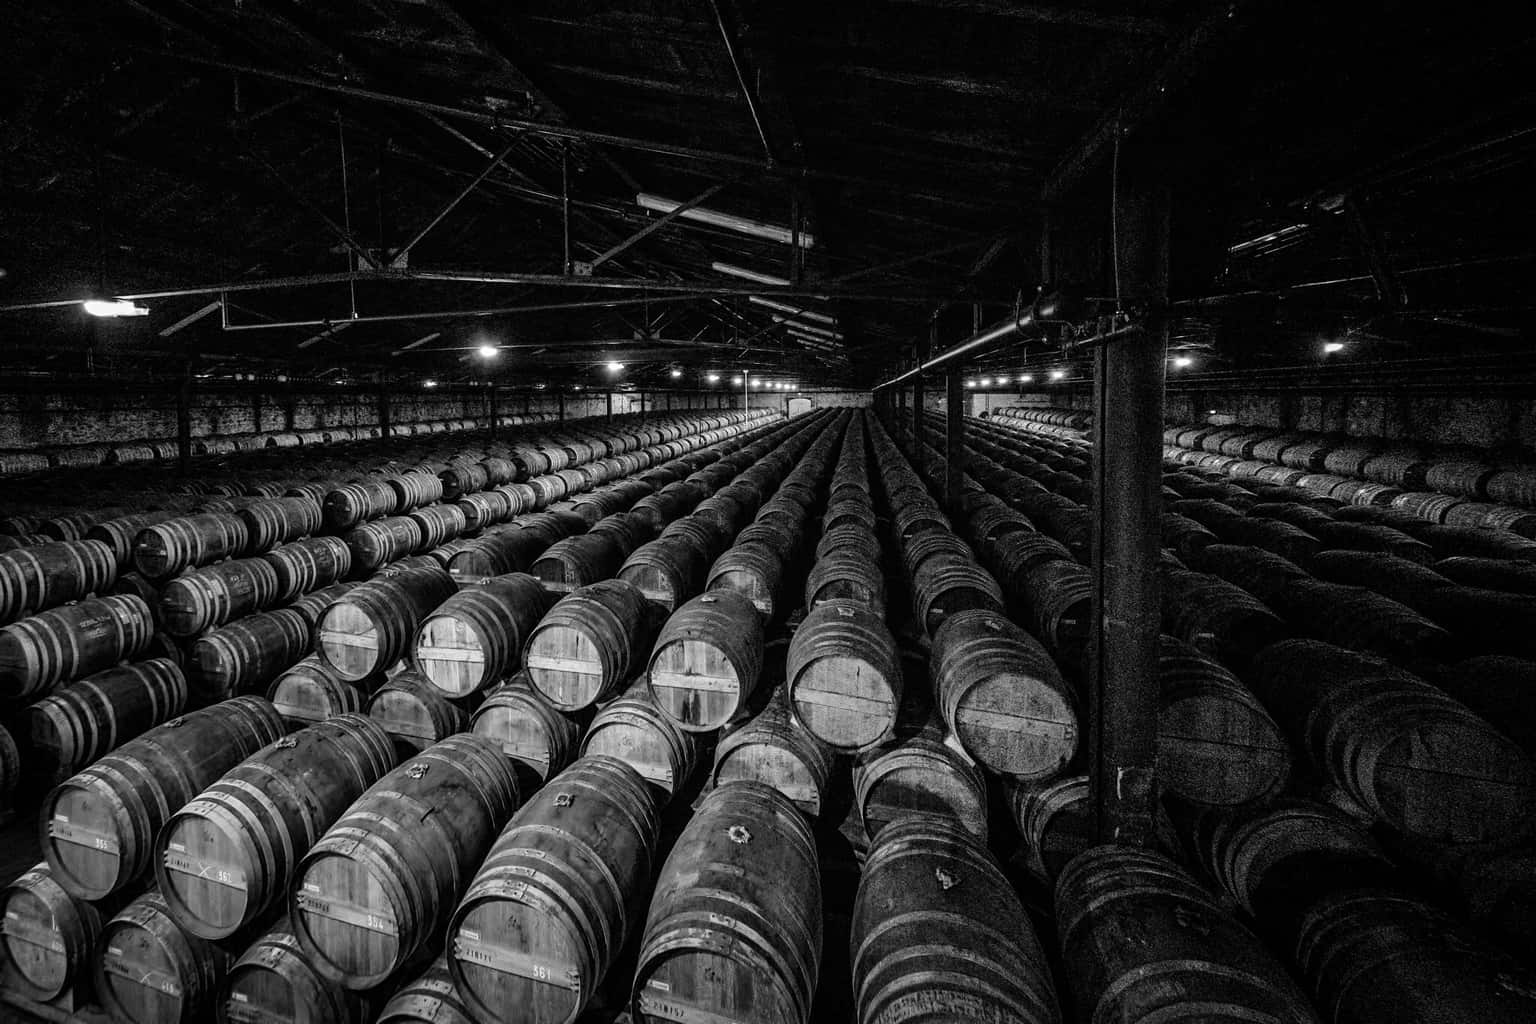  Barrels, Remy Marton. Cognac. France.  